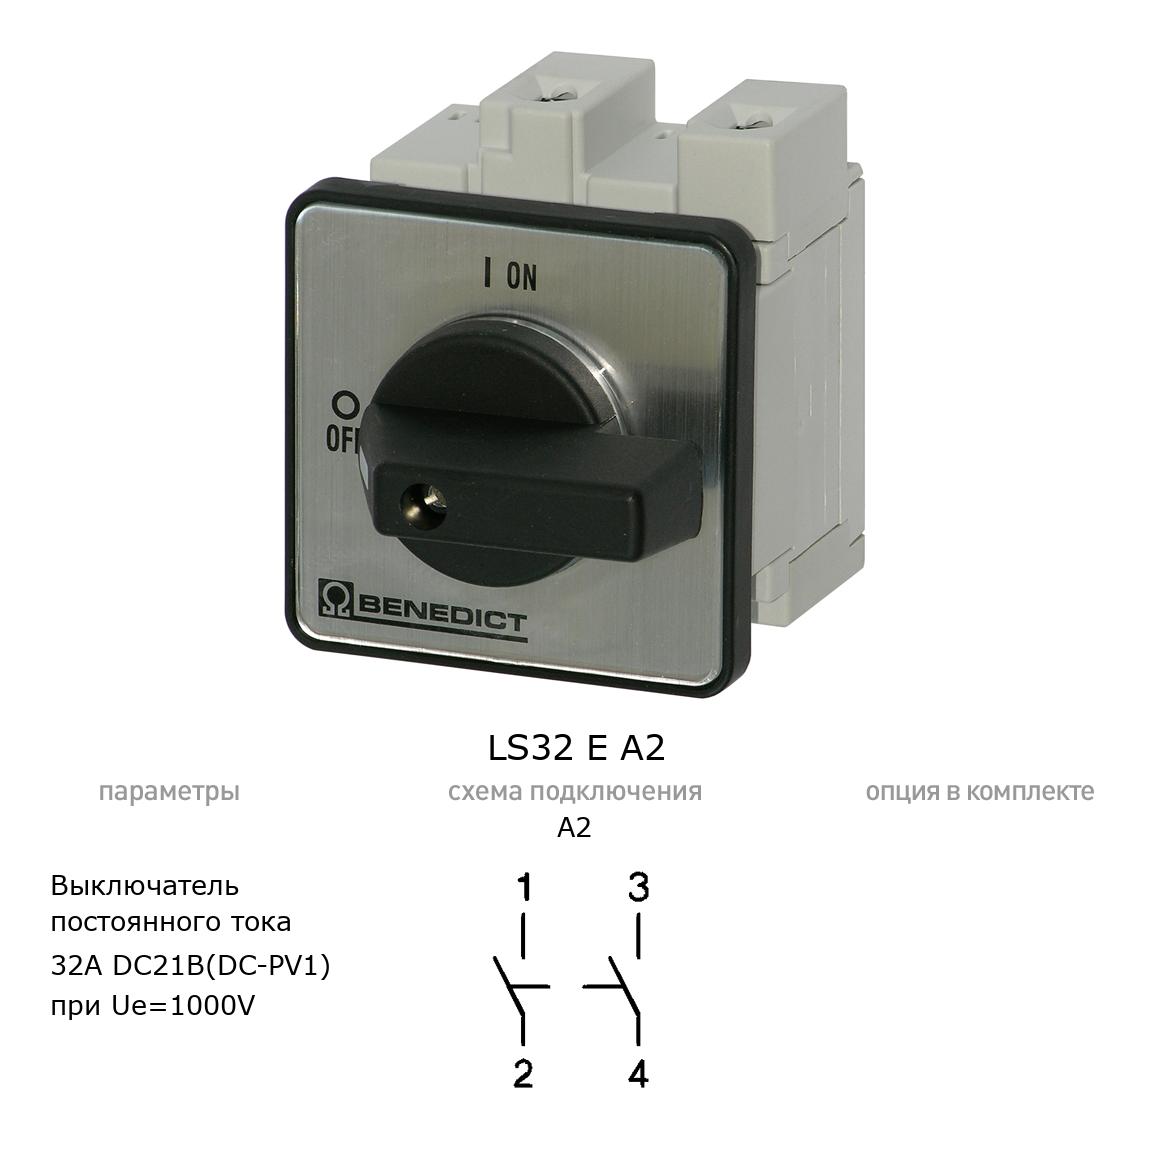 Кулачковый переключатель для постоянного тока (DC) LS32 E A2 BENEDICT